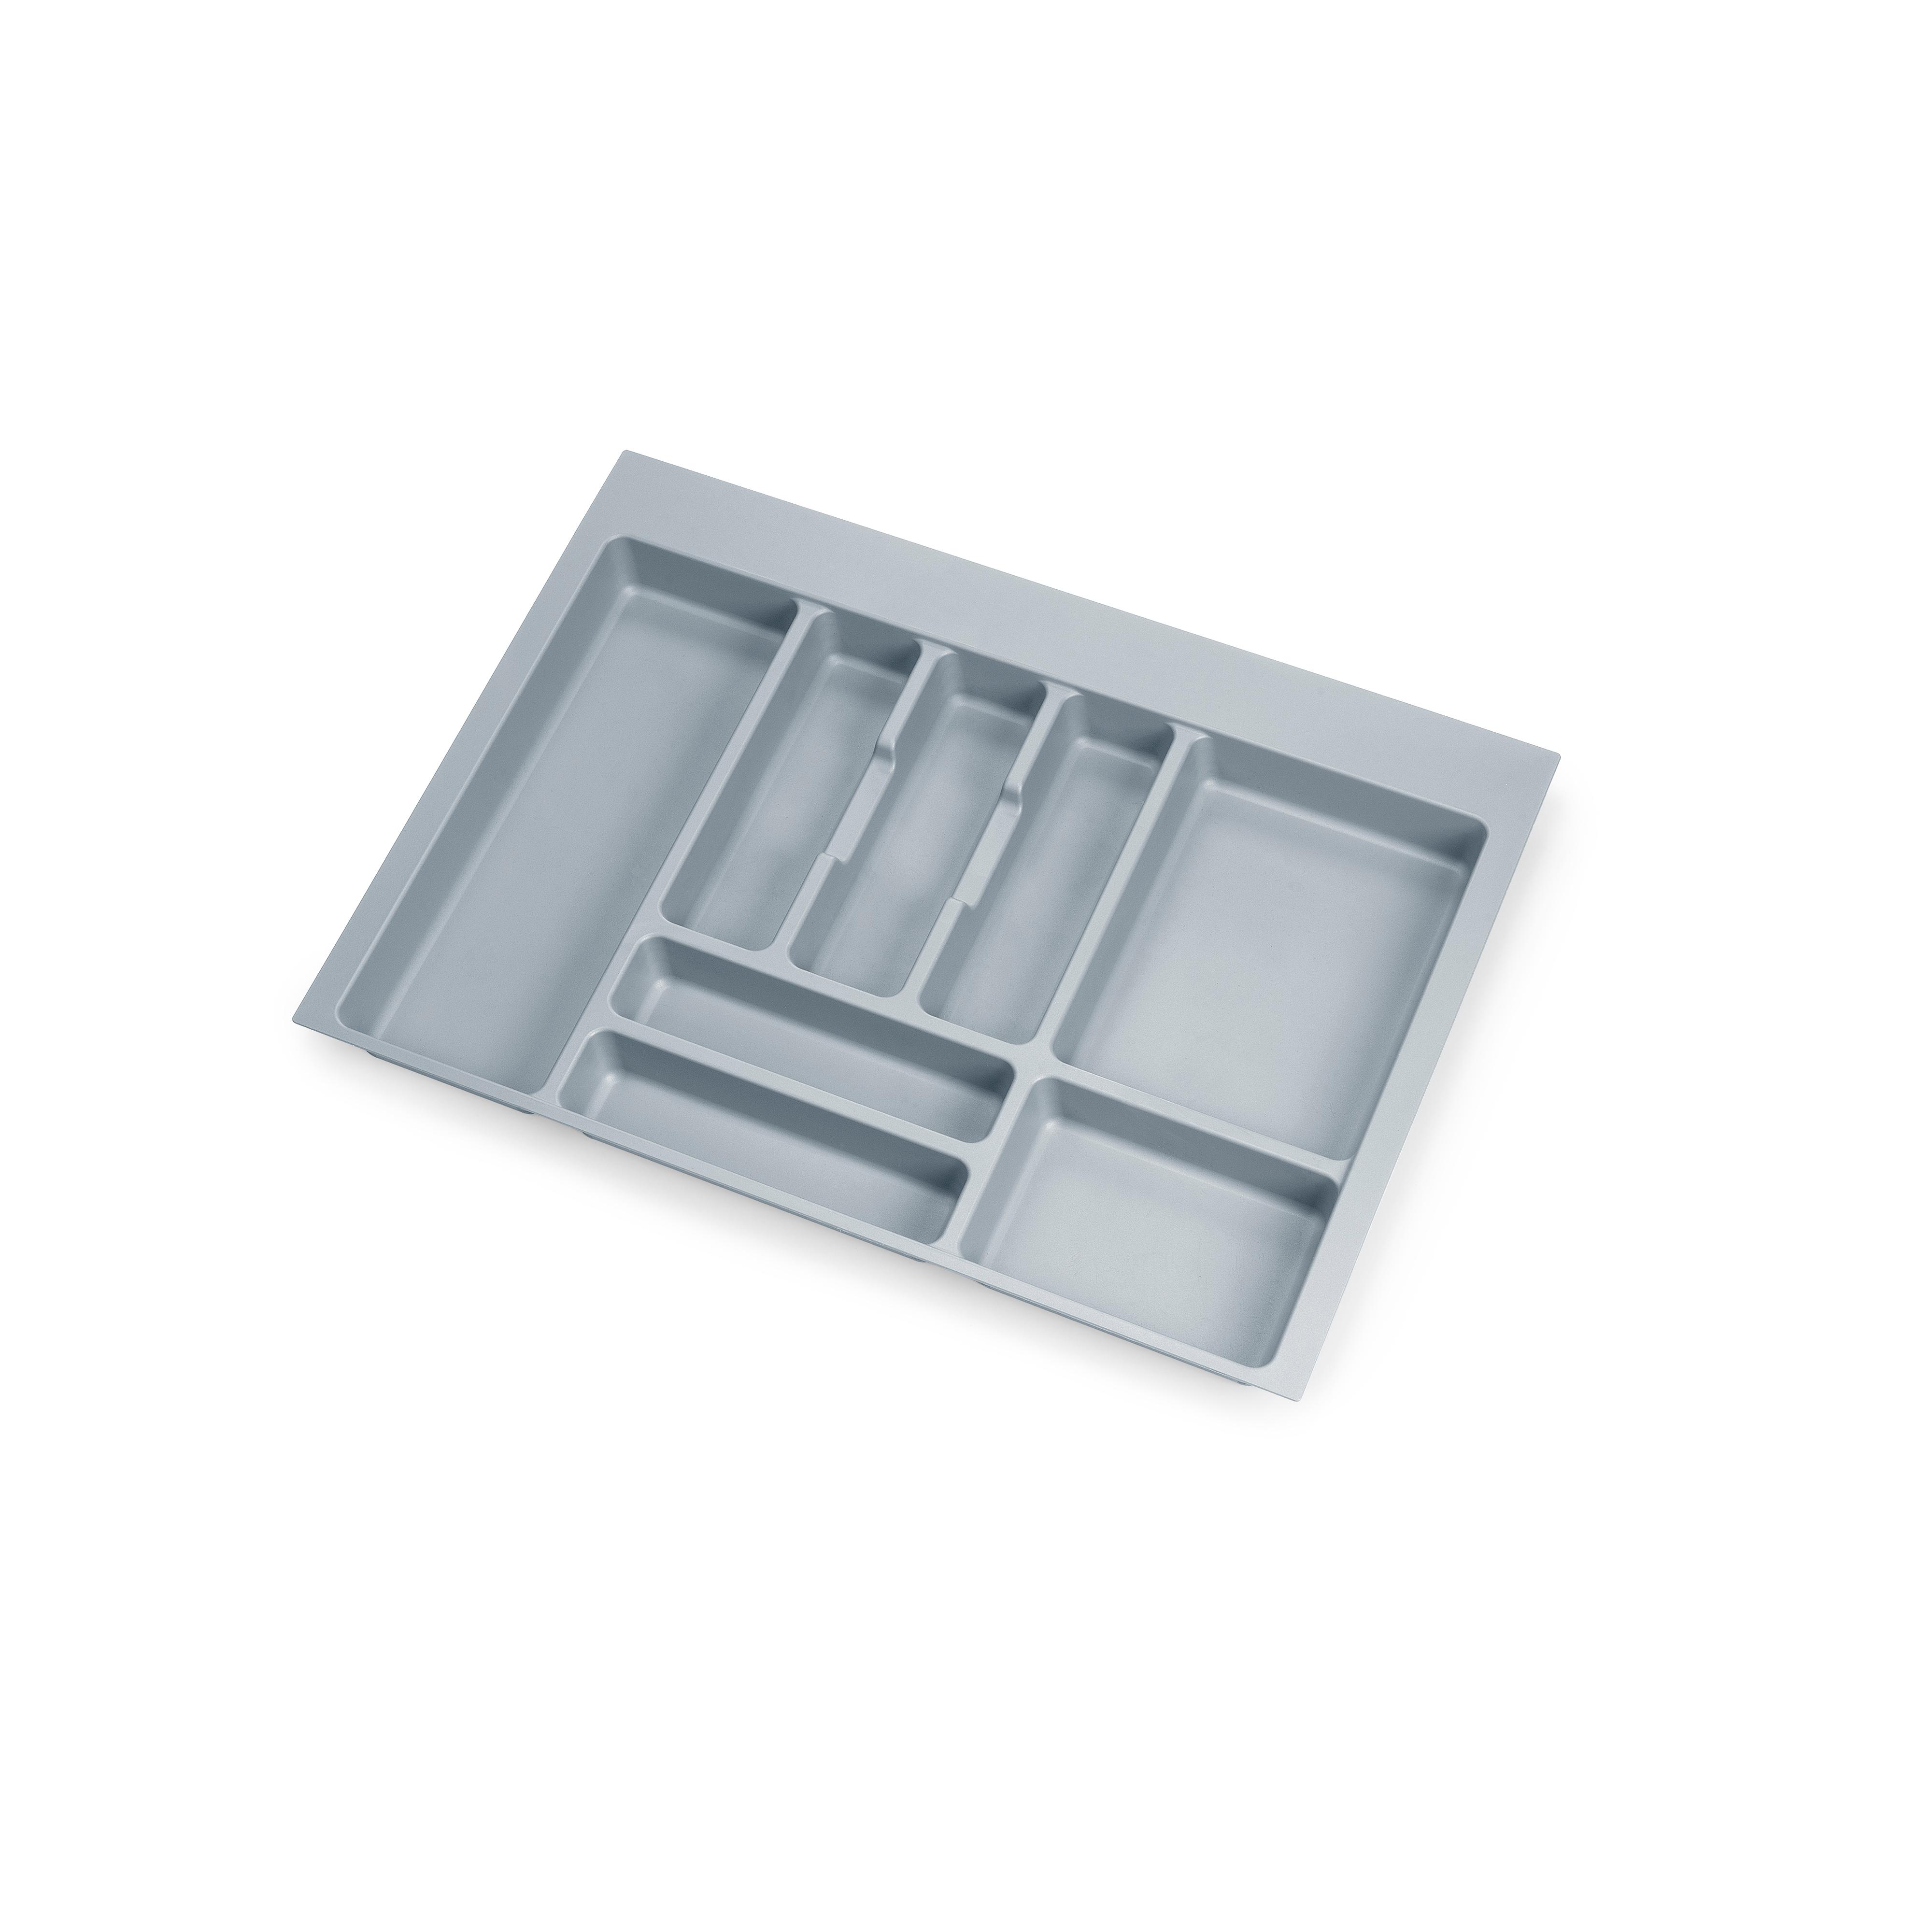 Range-couverts pour tiroir, largeurs d'armoires: 700 à 800 mm